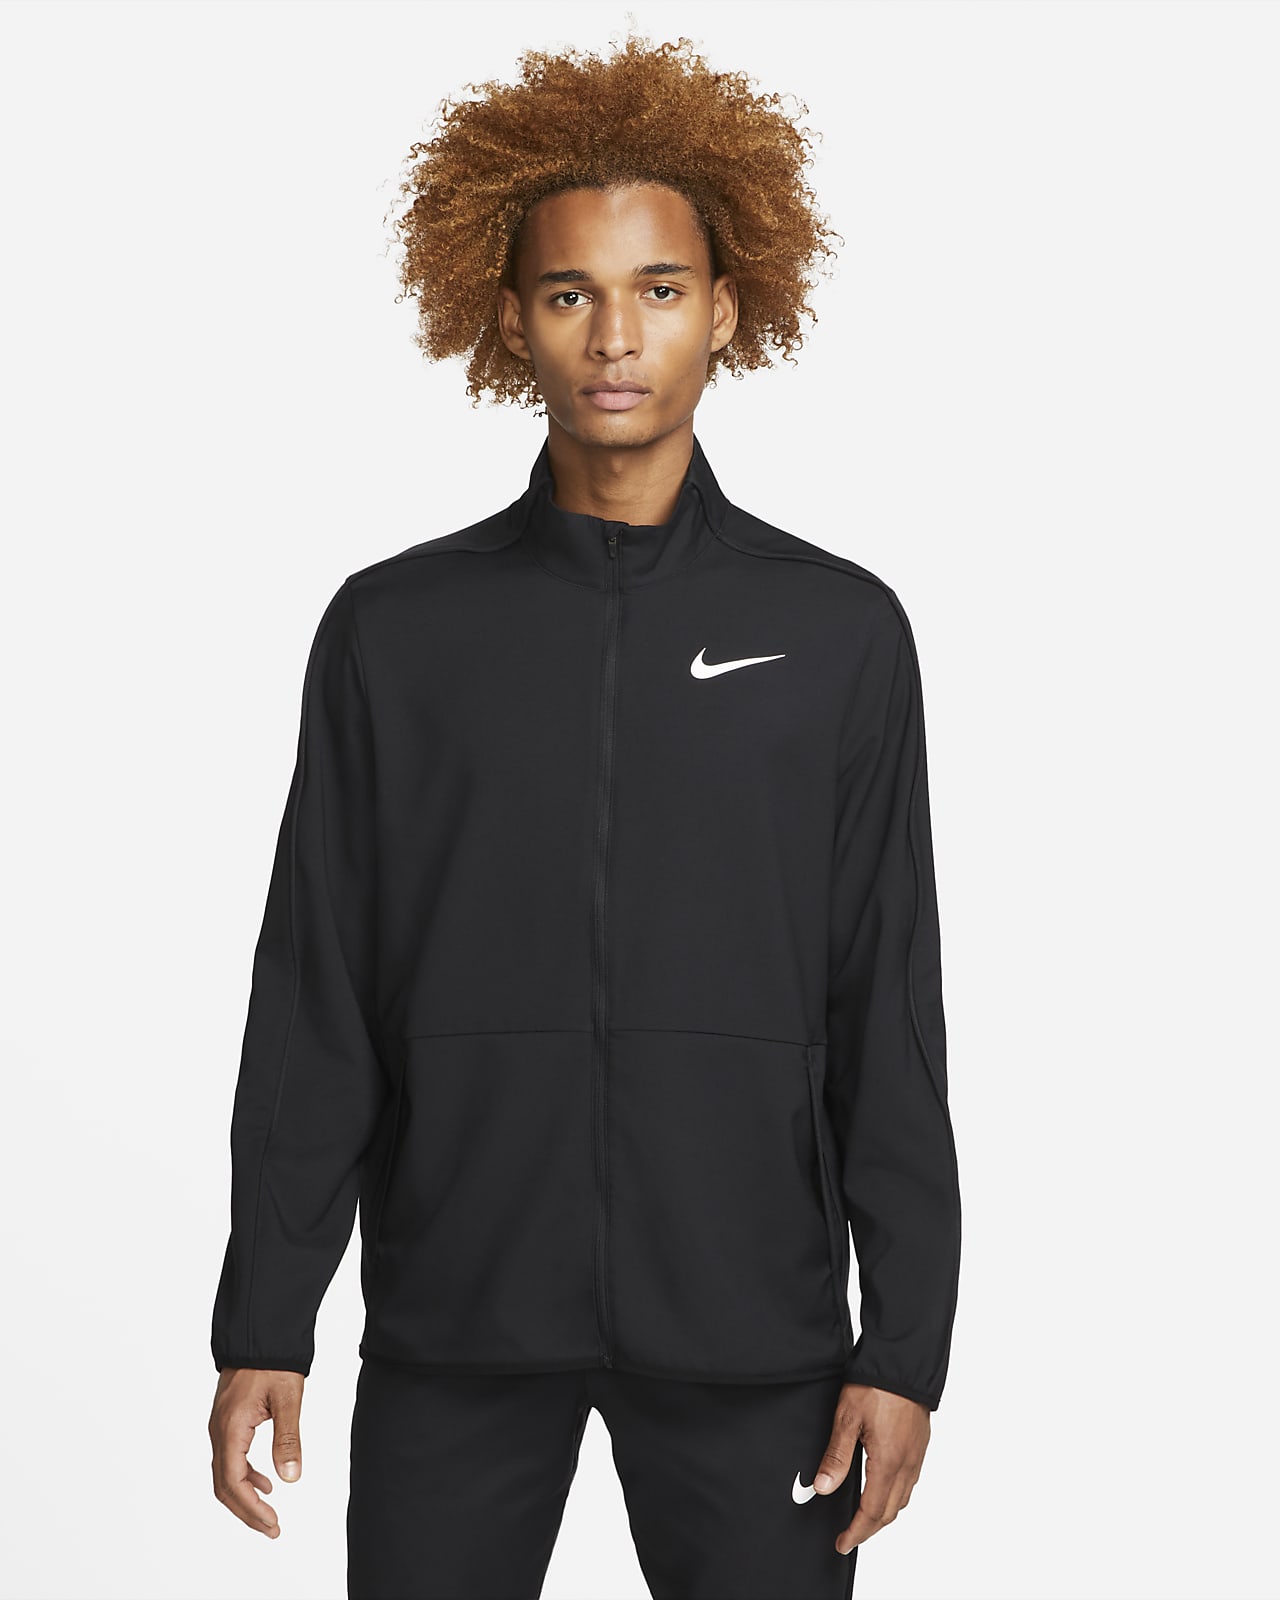 Nike Dri-FIT Men's Woven Training Jacket